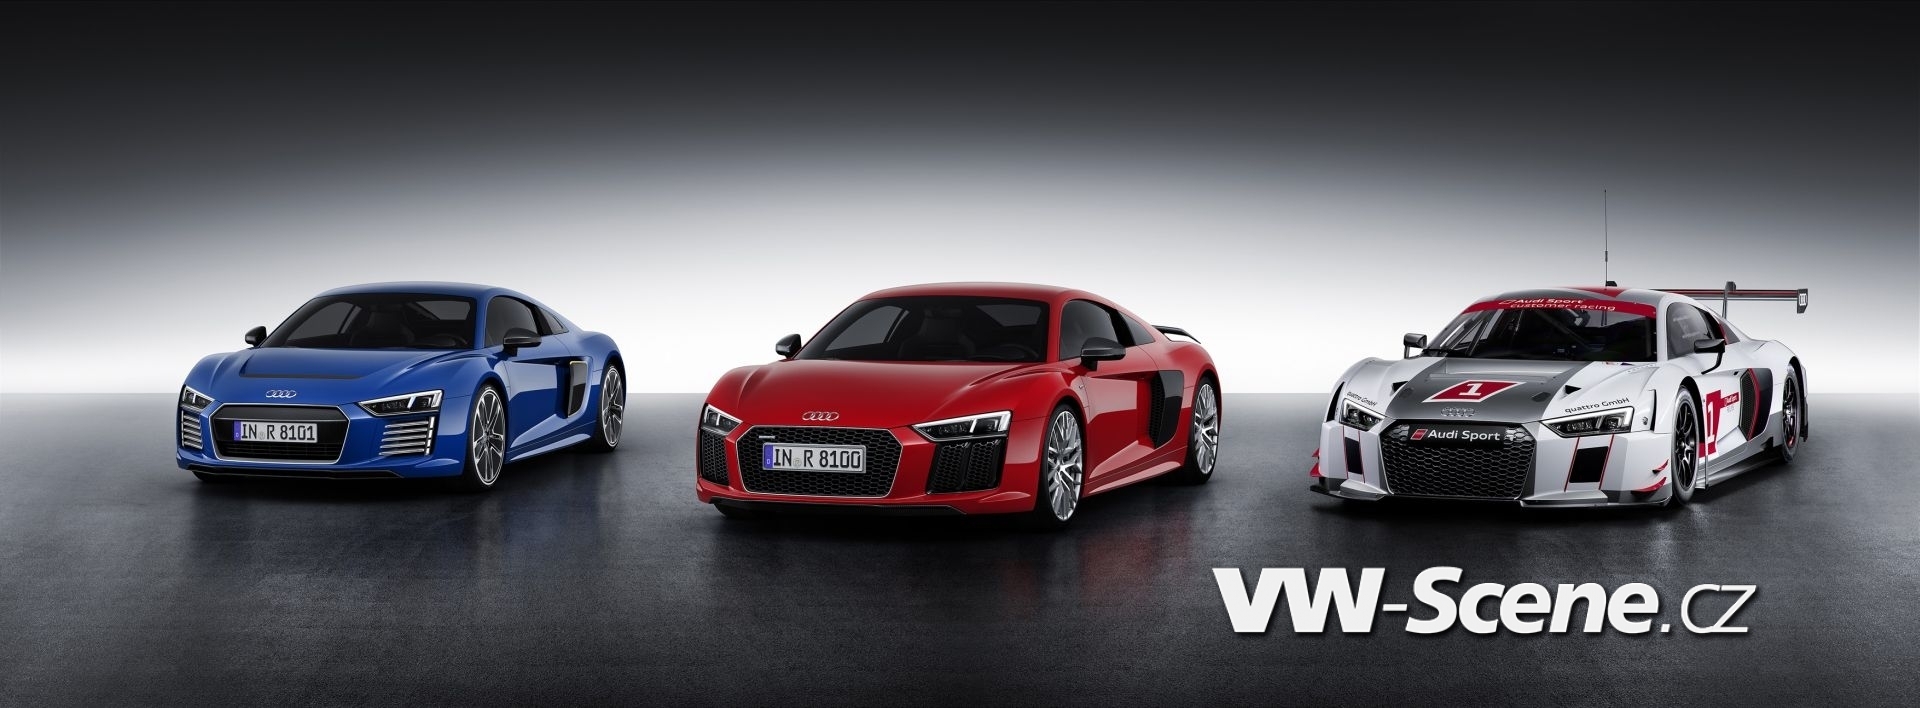 Audi R8 V10 / Audi R8 V10 plus / Audi R8 LMS